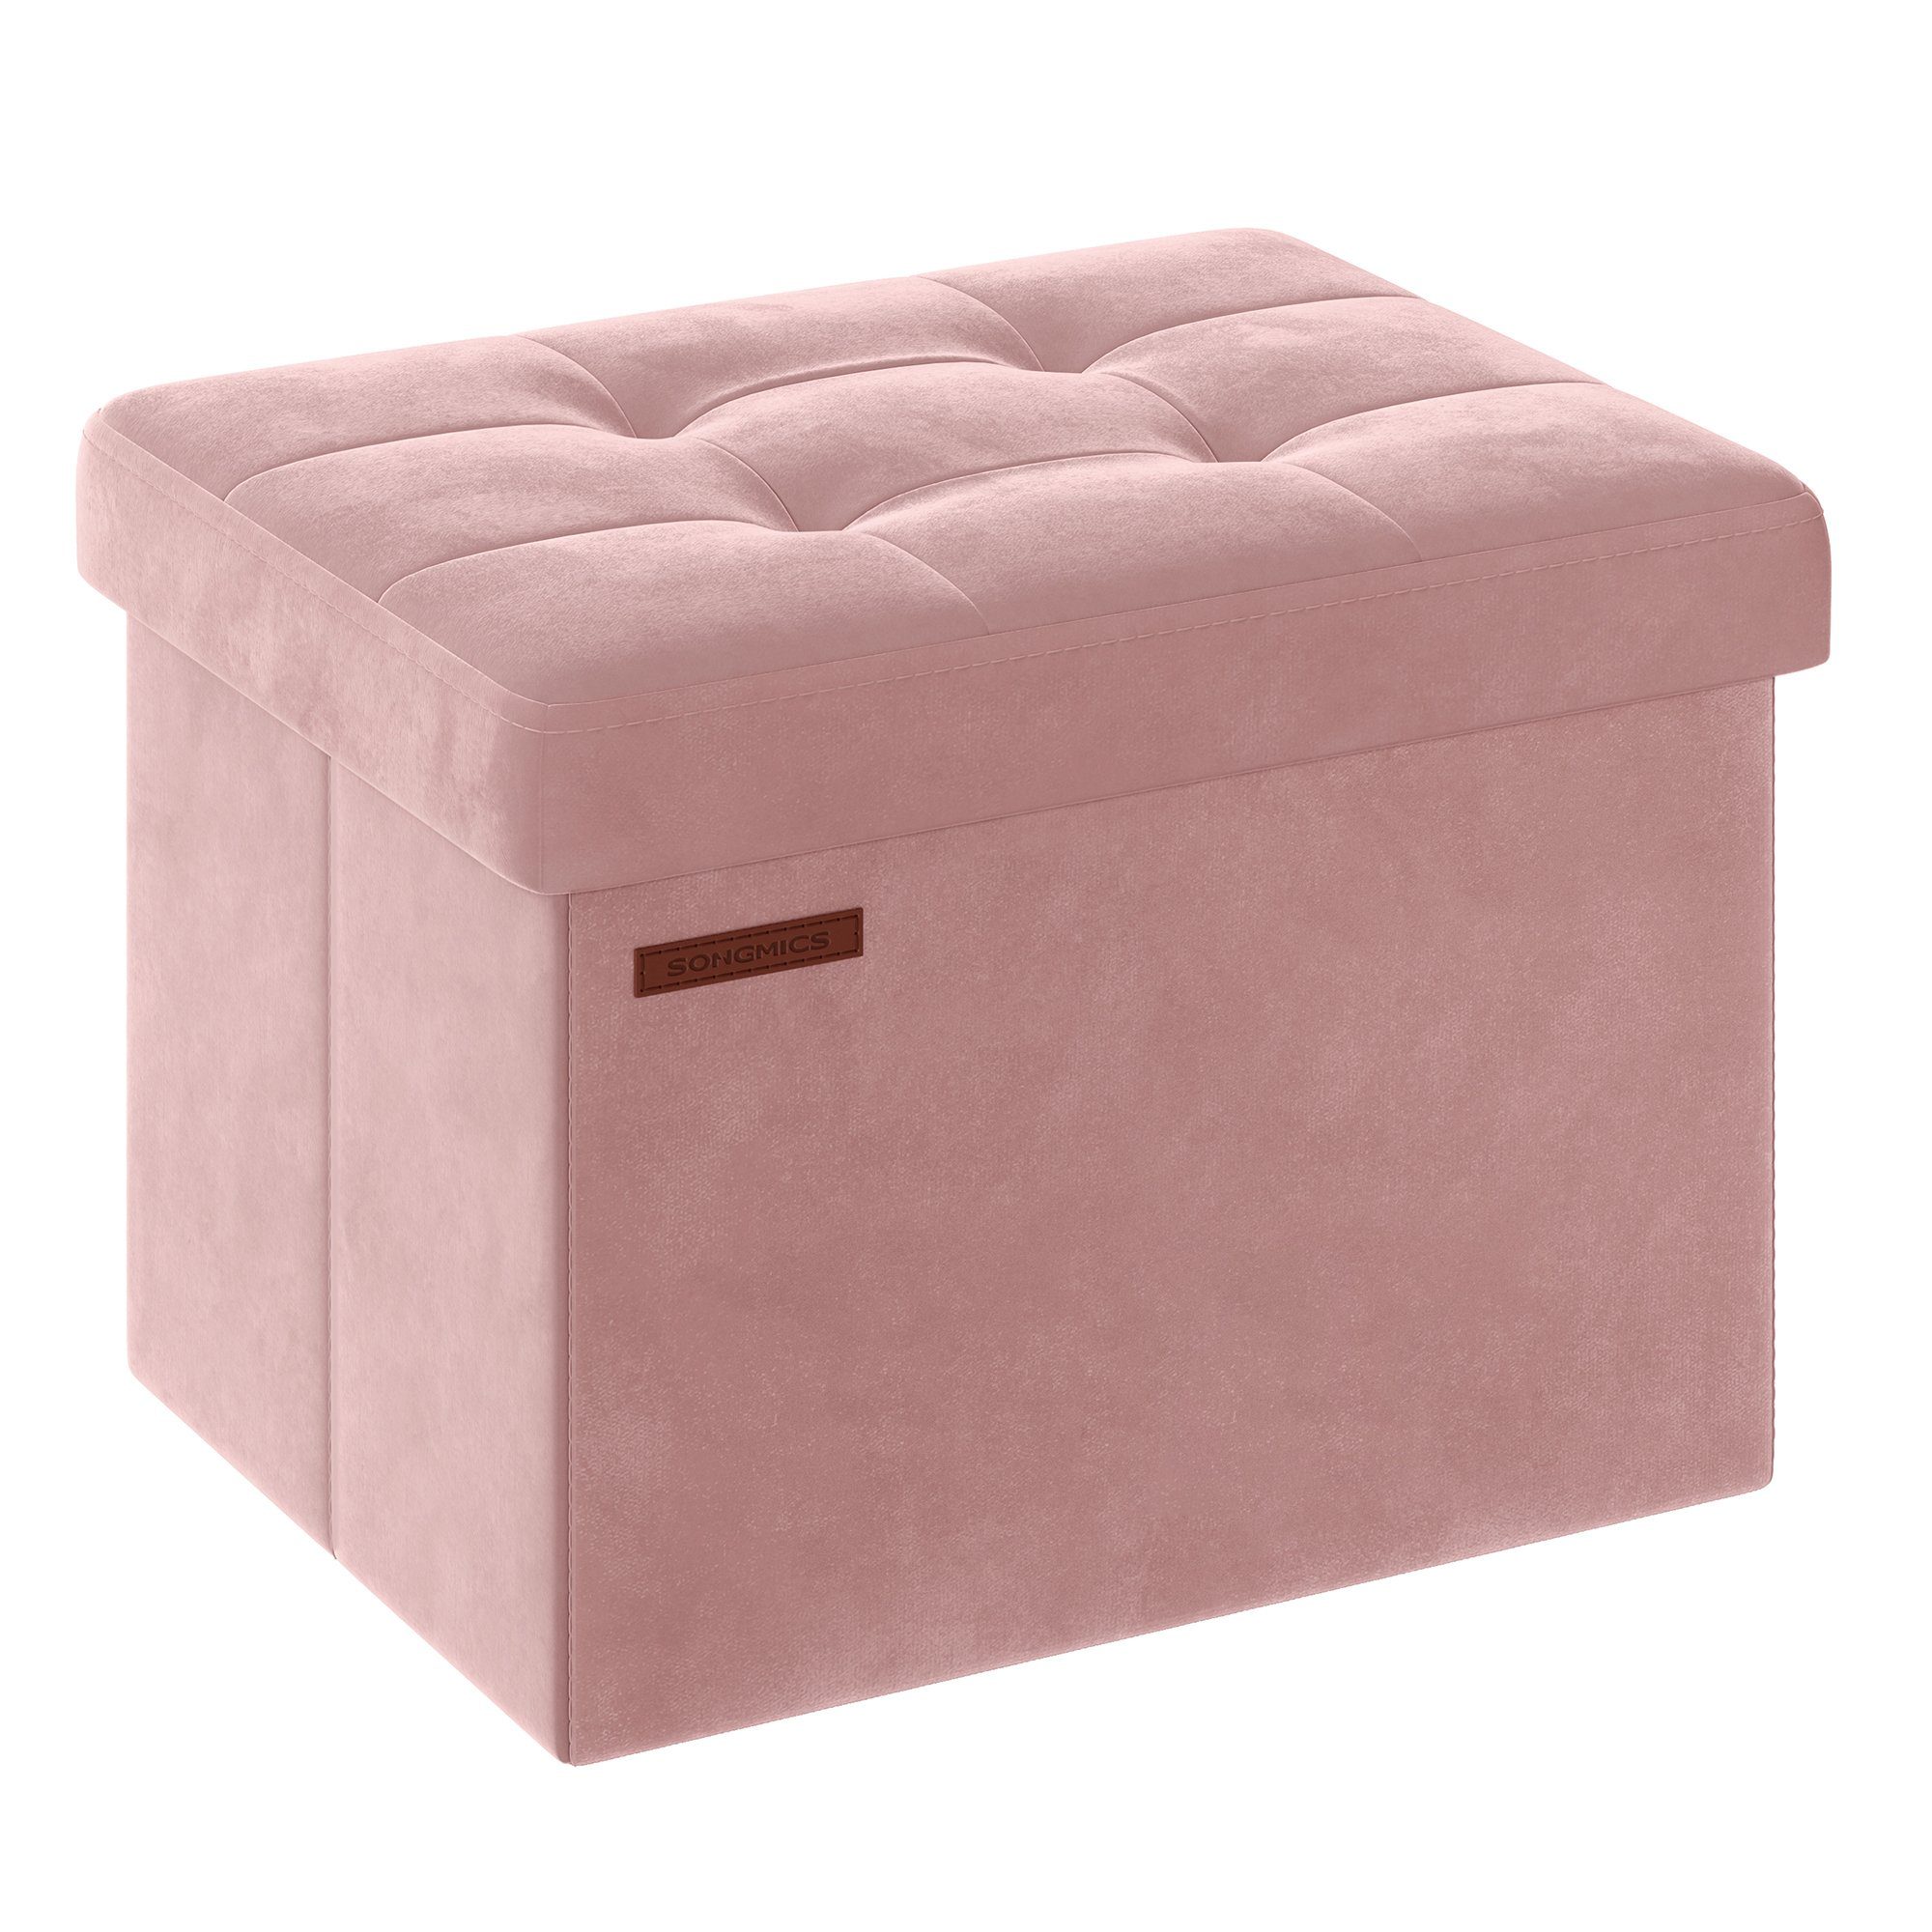 SONGMICS Sitzhocker, Aufbewahrungsbox mit Deckel, bis 130 kg belastbar Pastellrosa